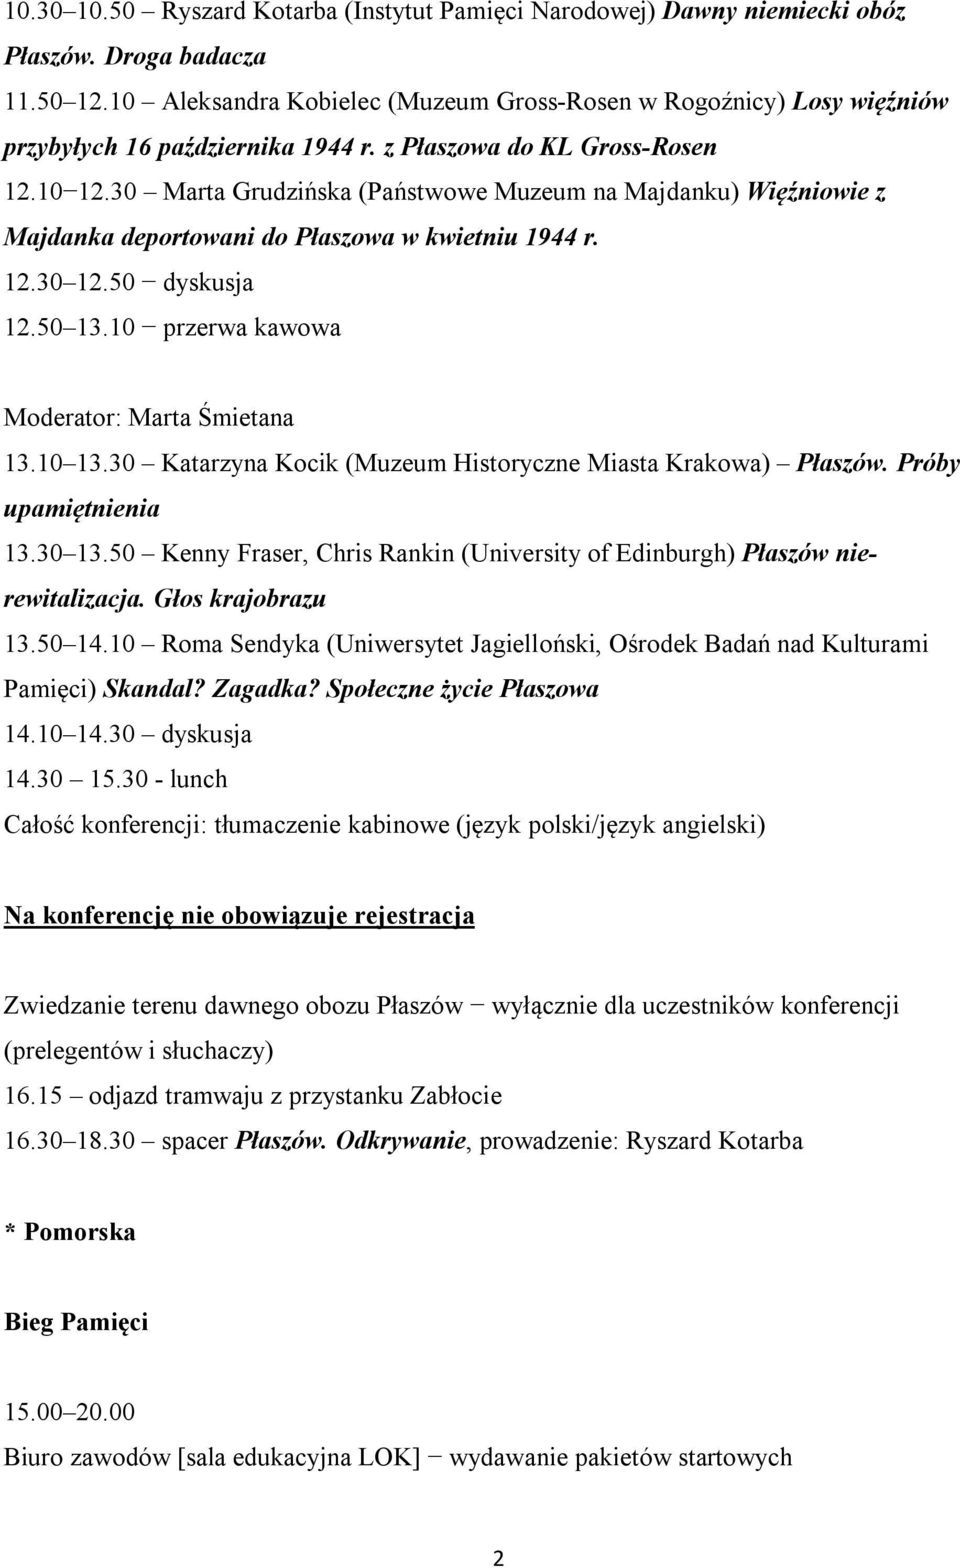 30 Marta Grudzińska (Państwowe Muzeum na Majdanku) Więźniowie z Majdanka deportowani do Płaszowa w kwietniu 1944 r. 12.30 12.50 dyskusja 12.50 13.10 przerwa kawowa Moderator: Marta Śmietana 13.10 13.